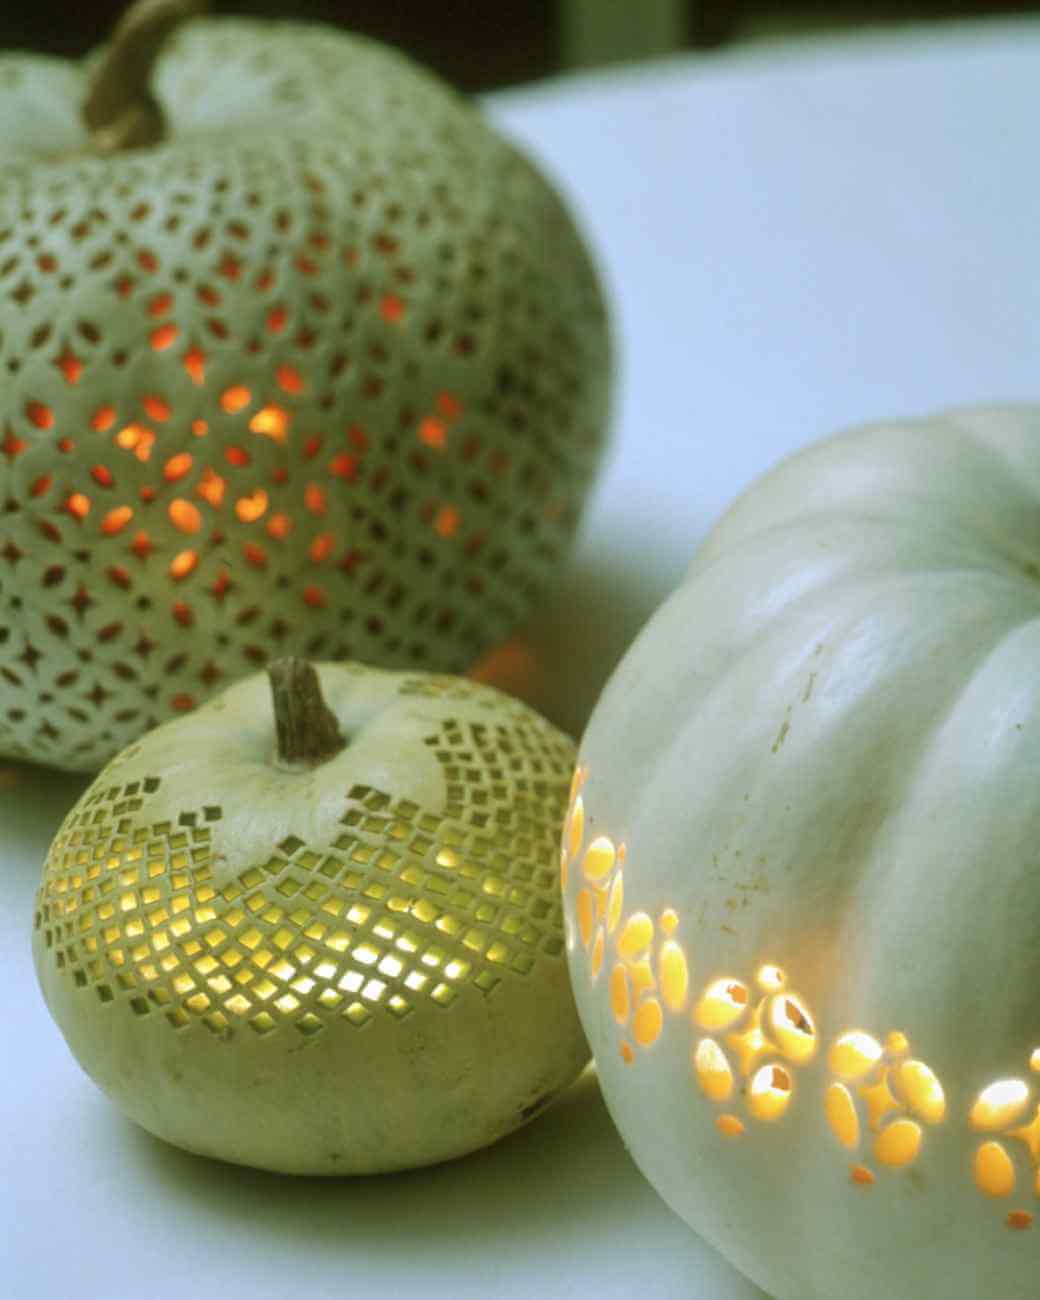 DIY Pumpkin Carving Ideas: Lace Patterned Pumpkins